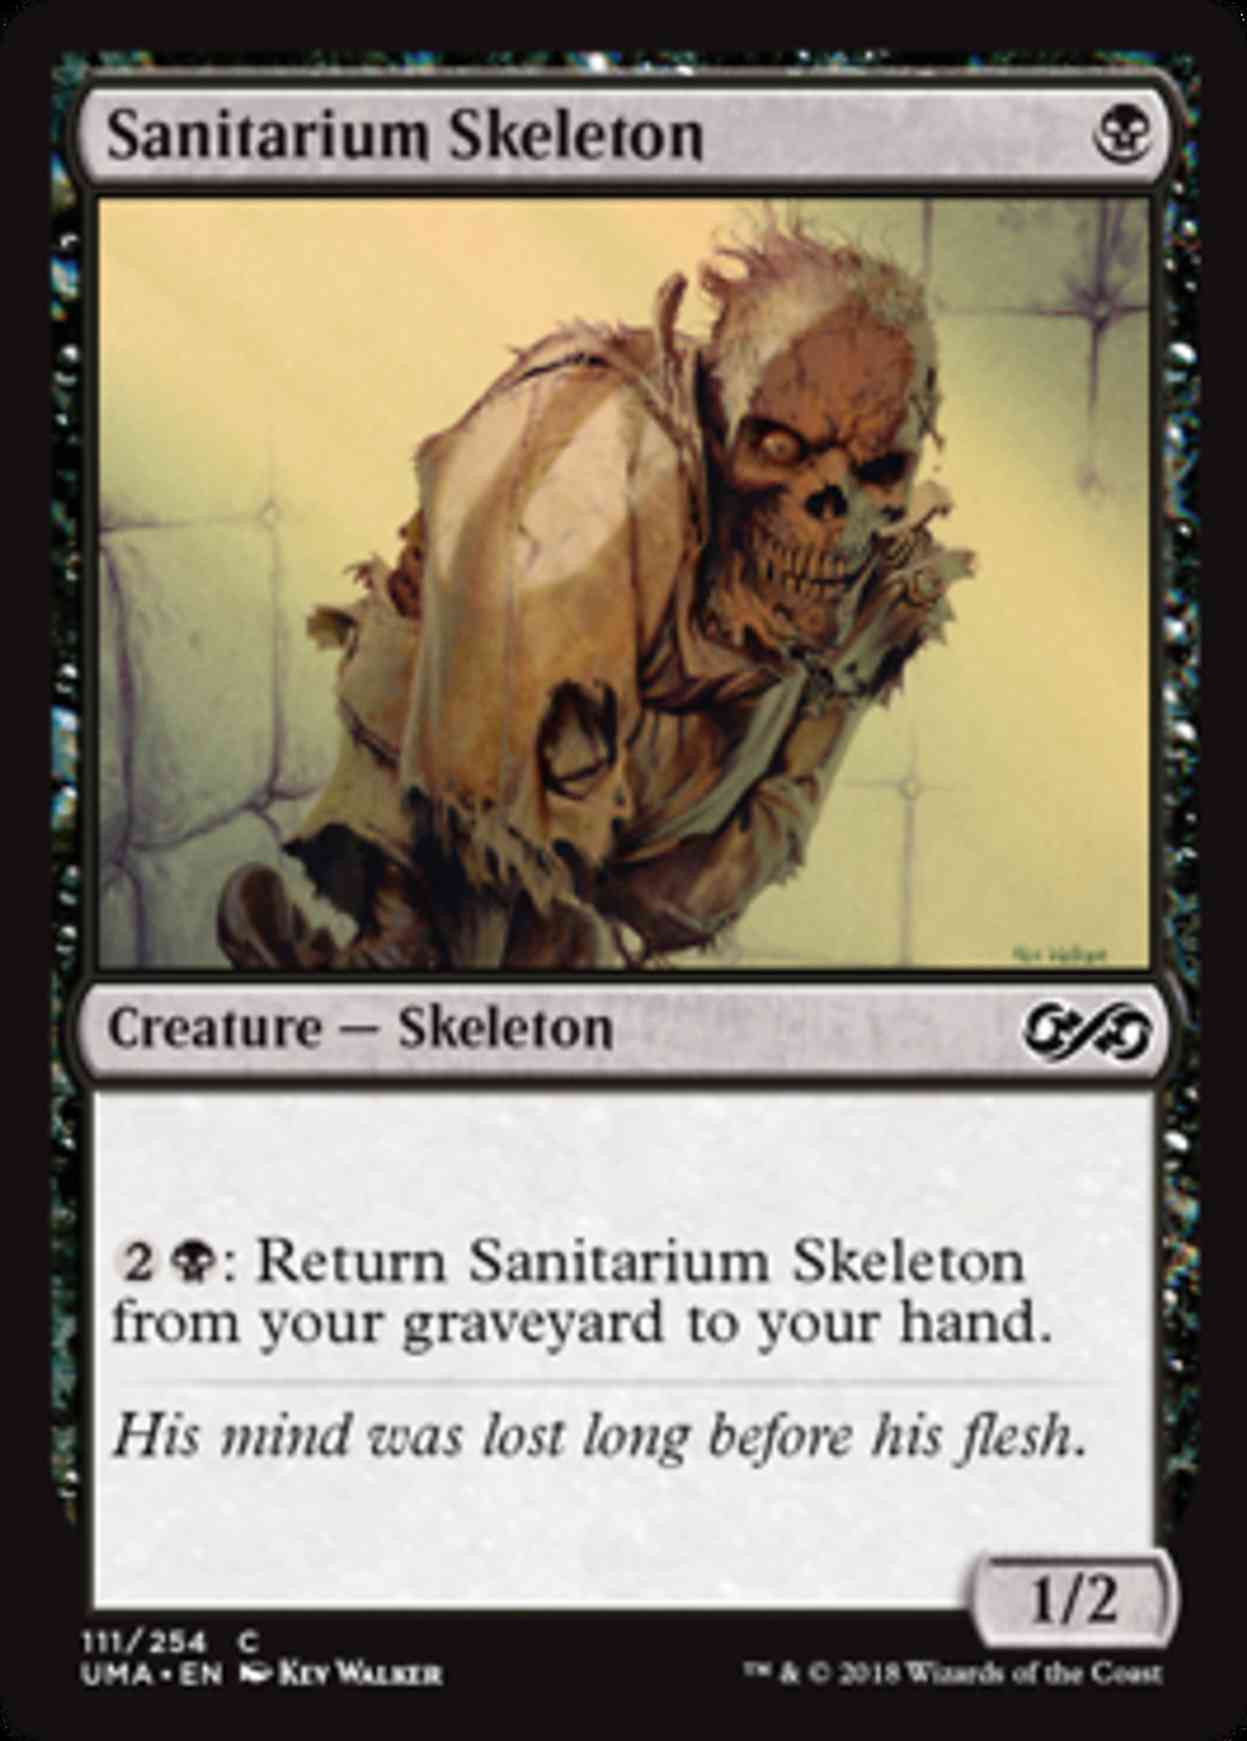 Sanitarium Skeleton magic card front